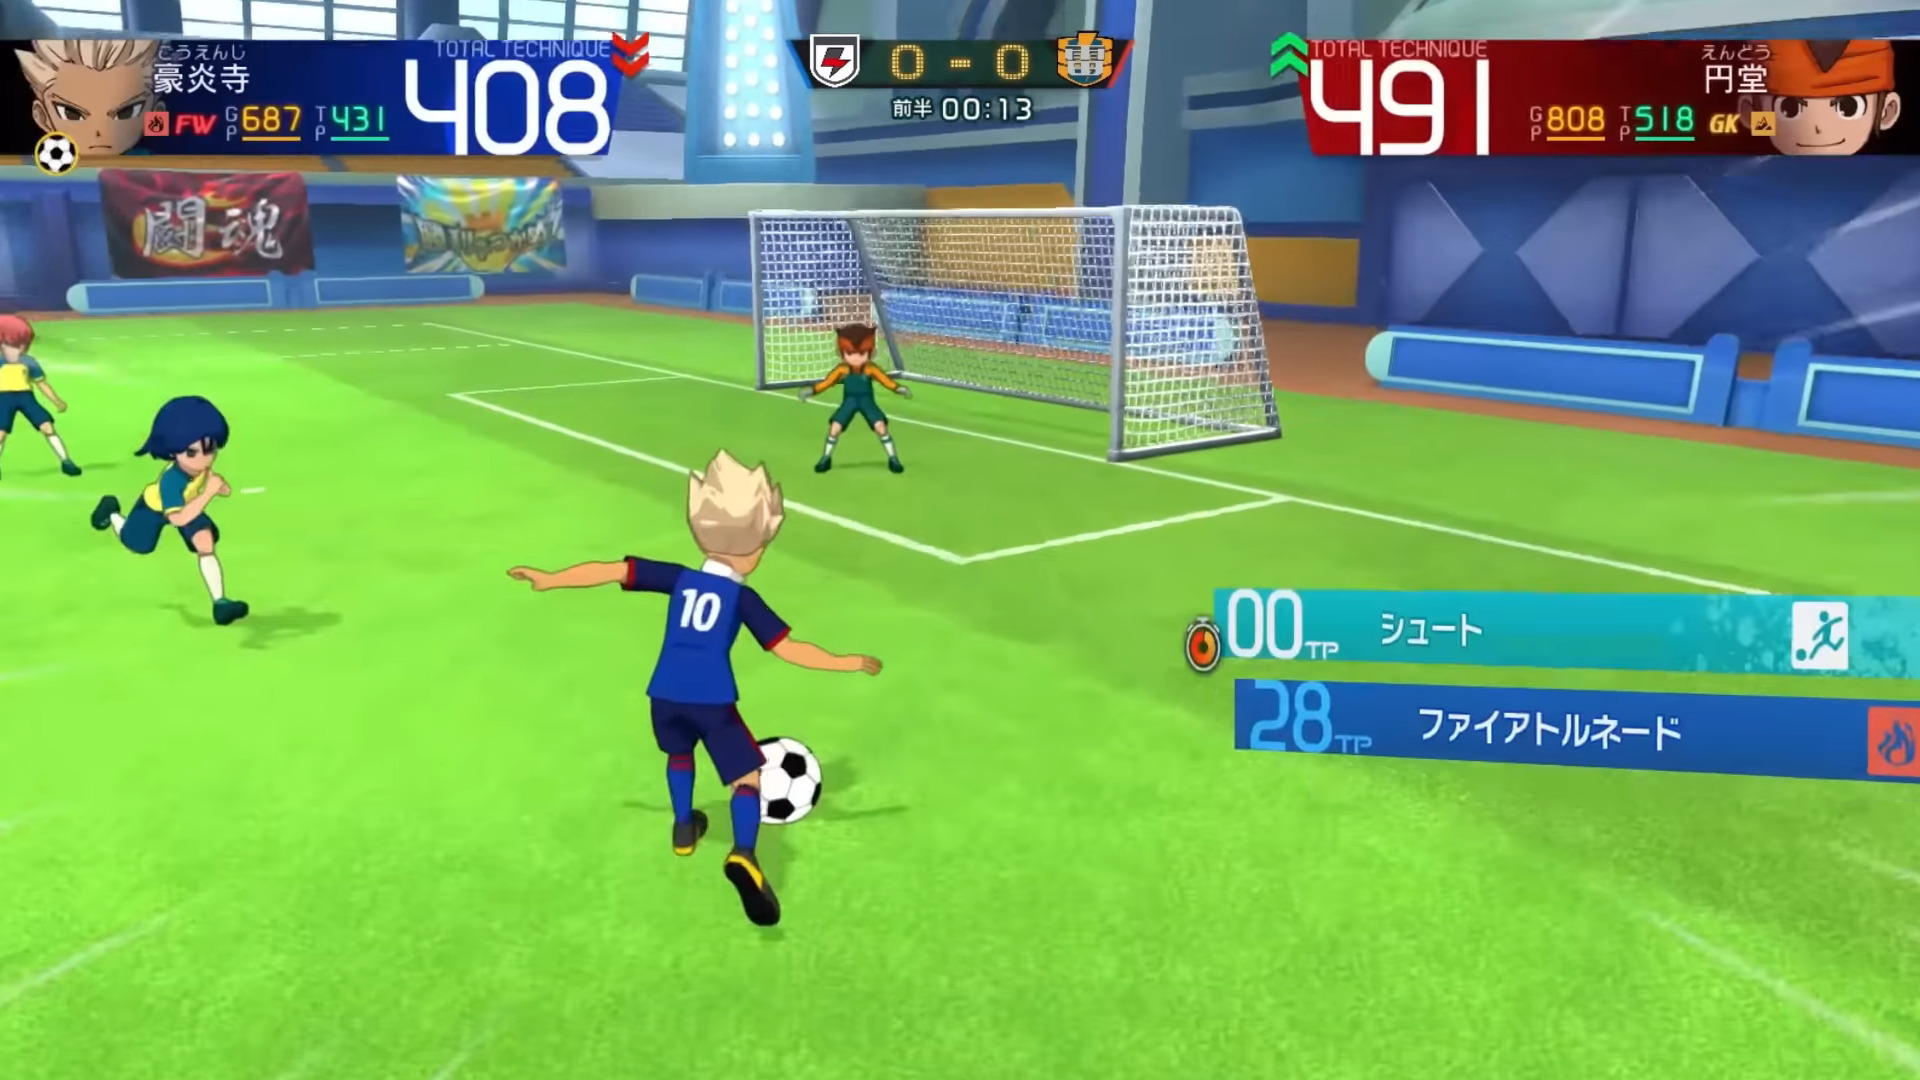 #Inazuma Eleven: Victory Road of Heroes stellt das Gameplay im Video vor